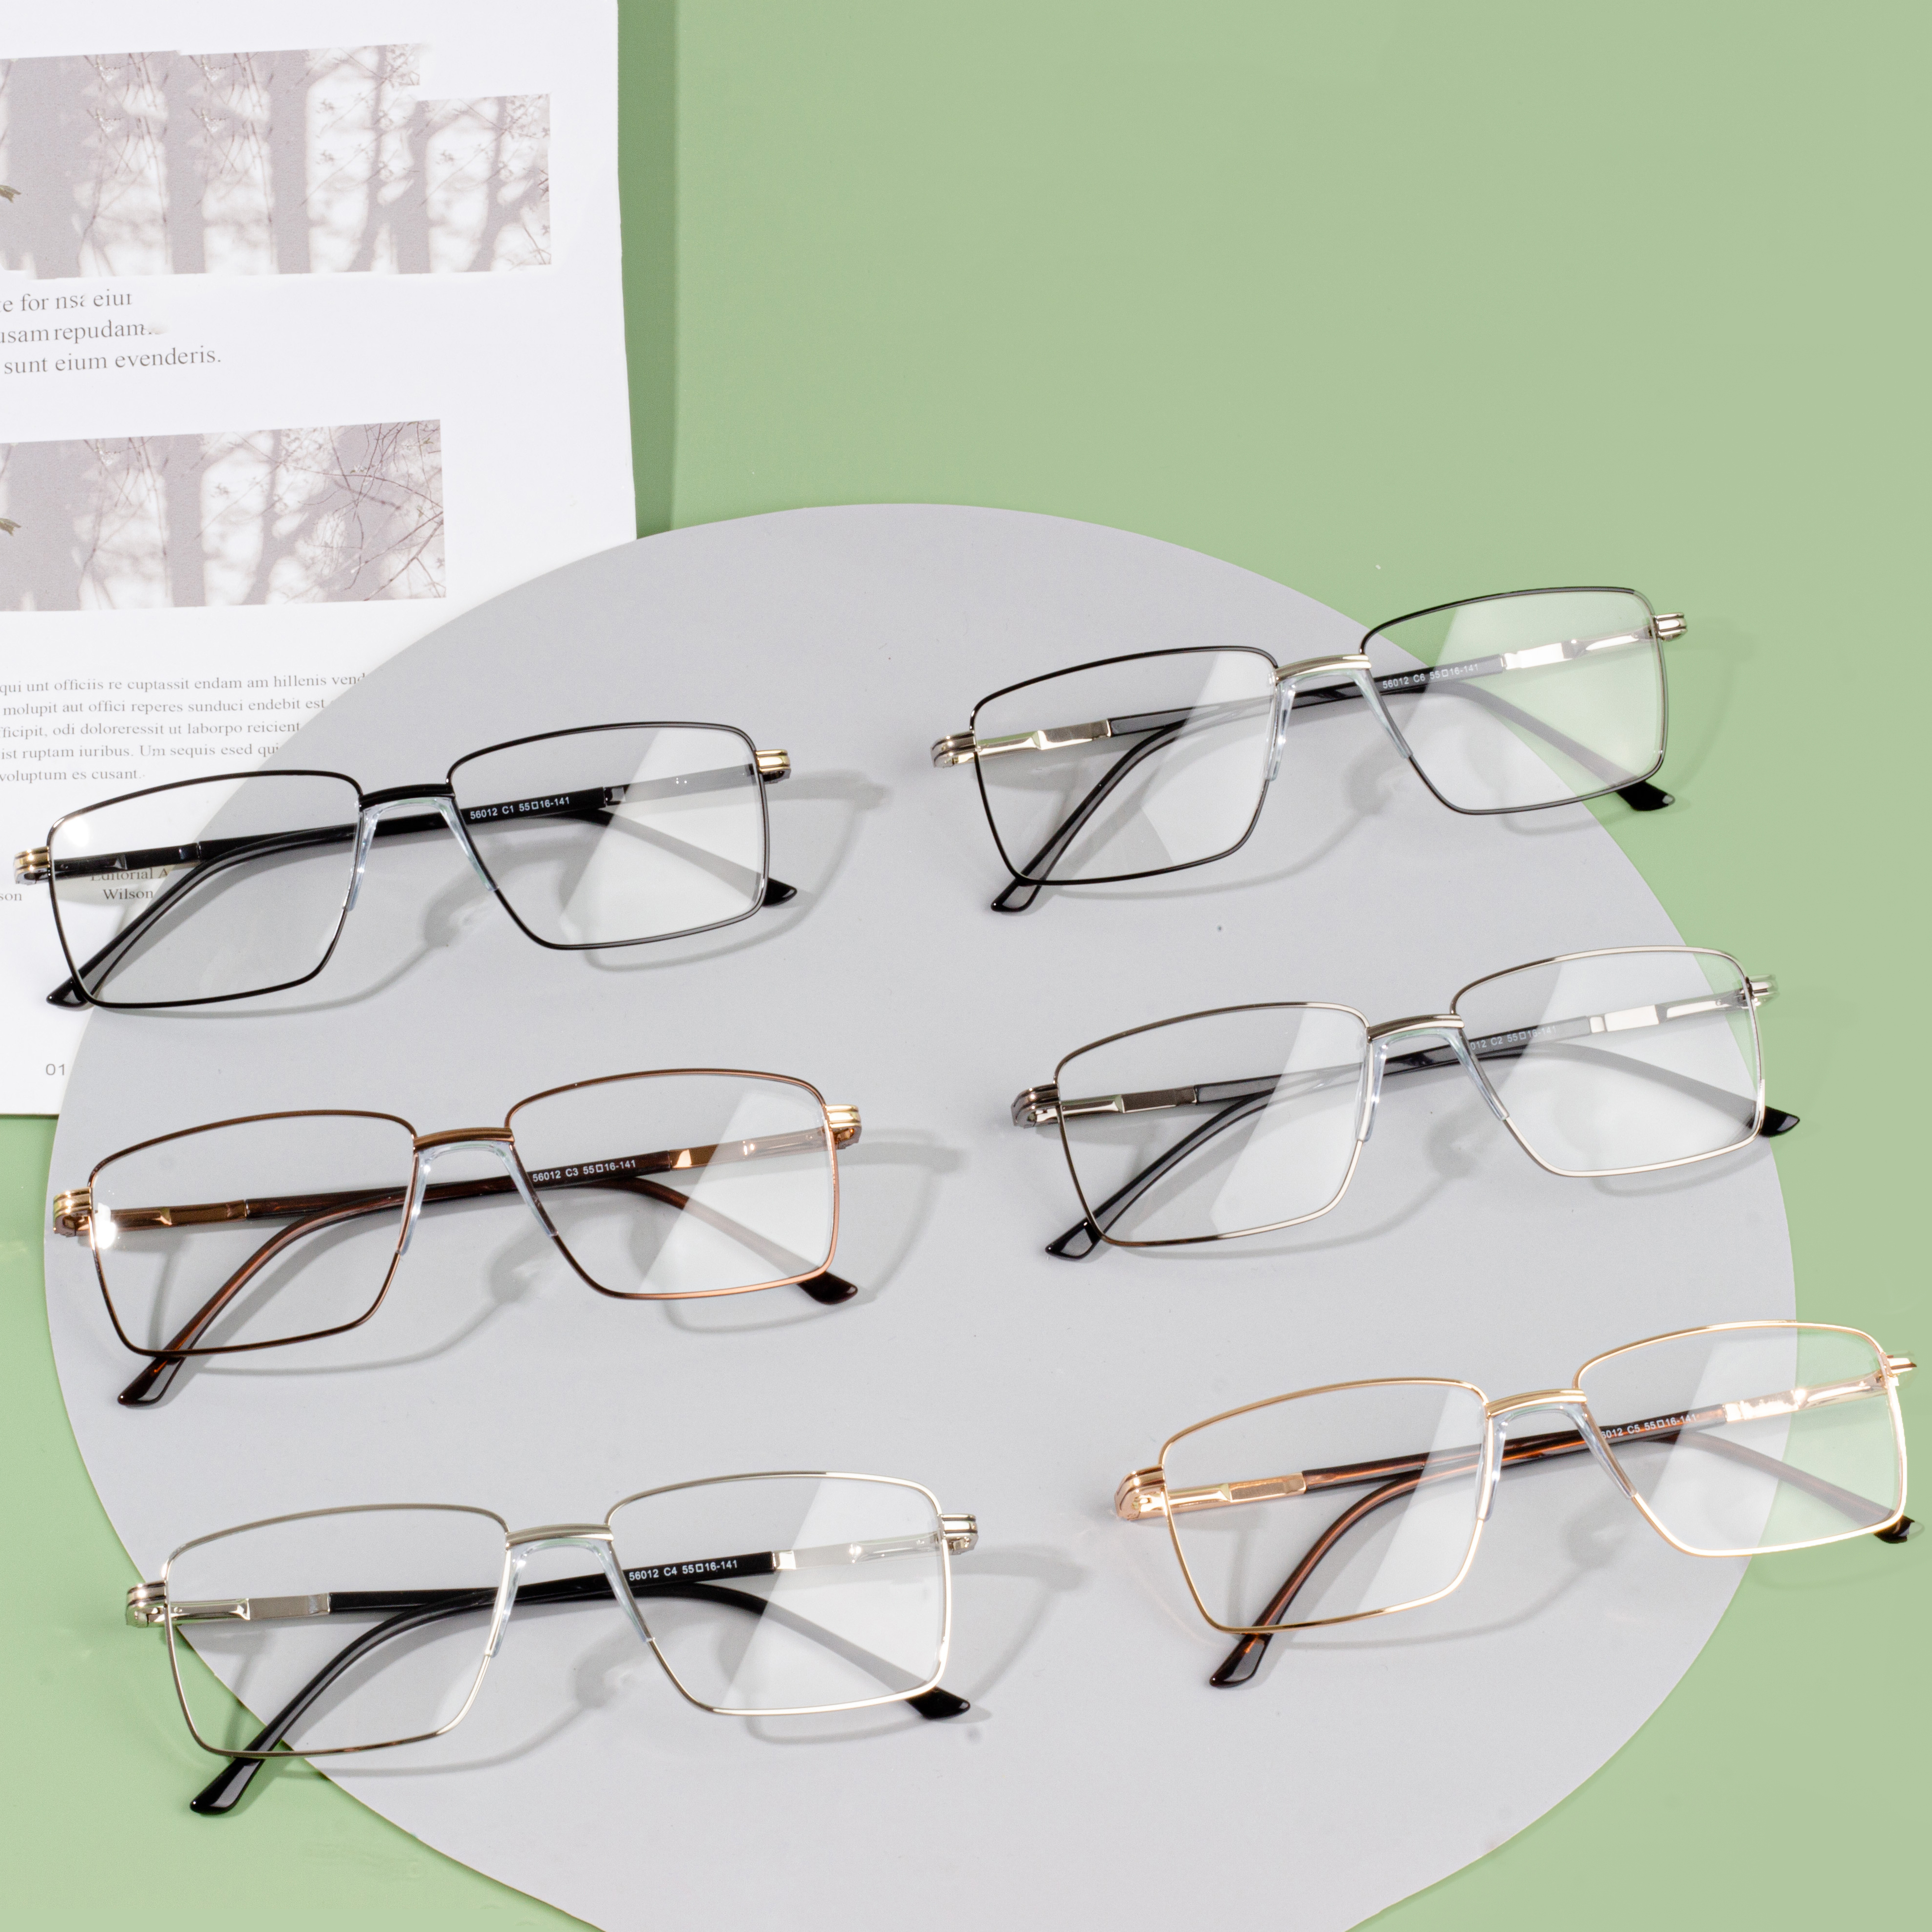 Dizajnerske naočale za muškarce po veleprodajnim cijenama